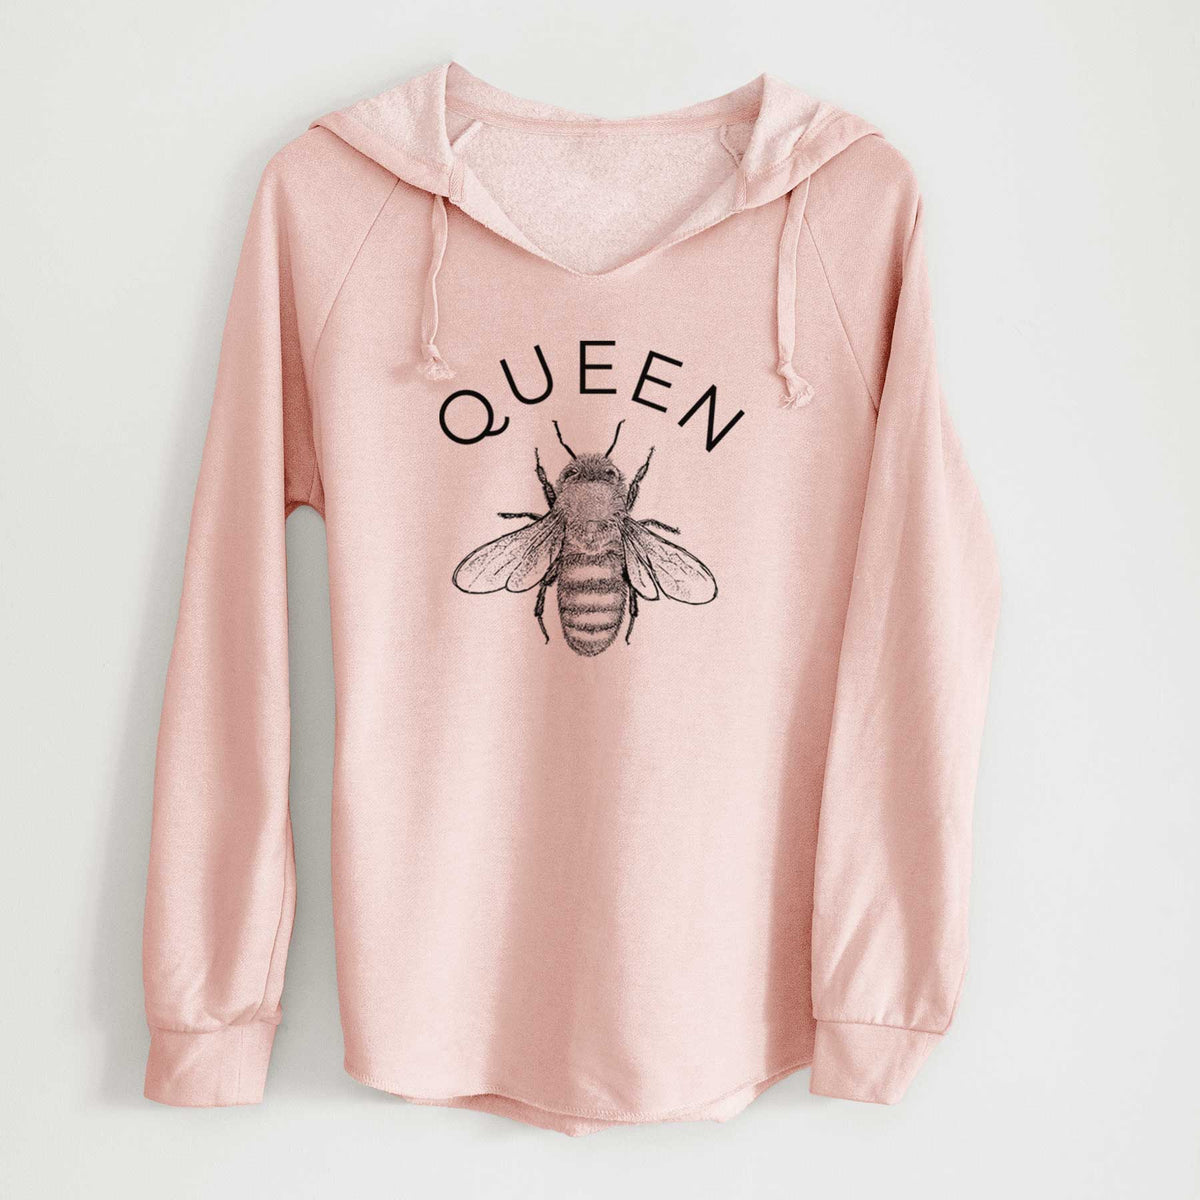 Queen Bee - Cali Wave Hooded Sweatshirt